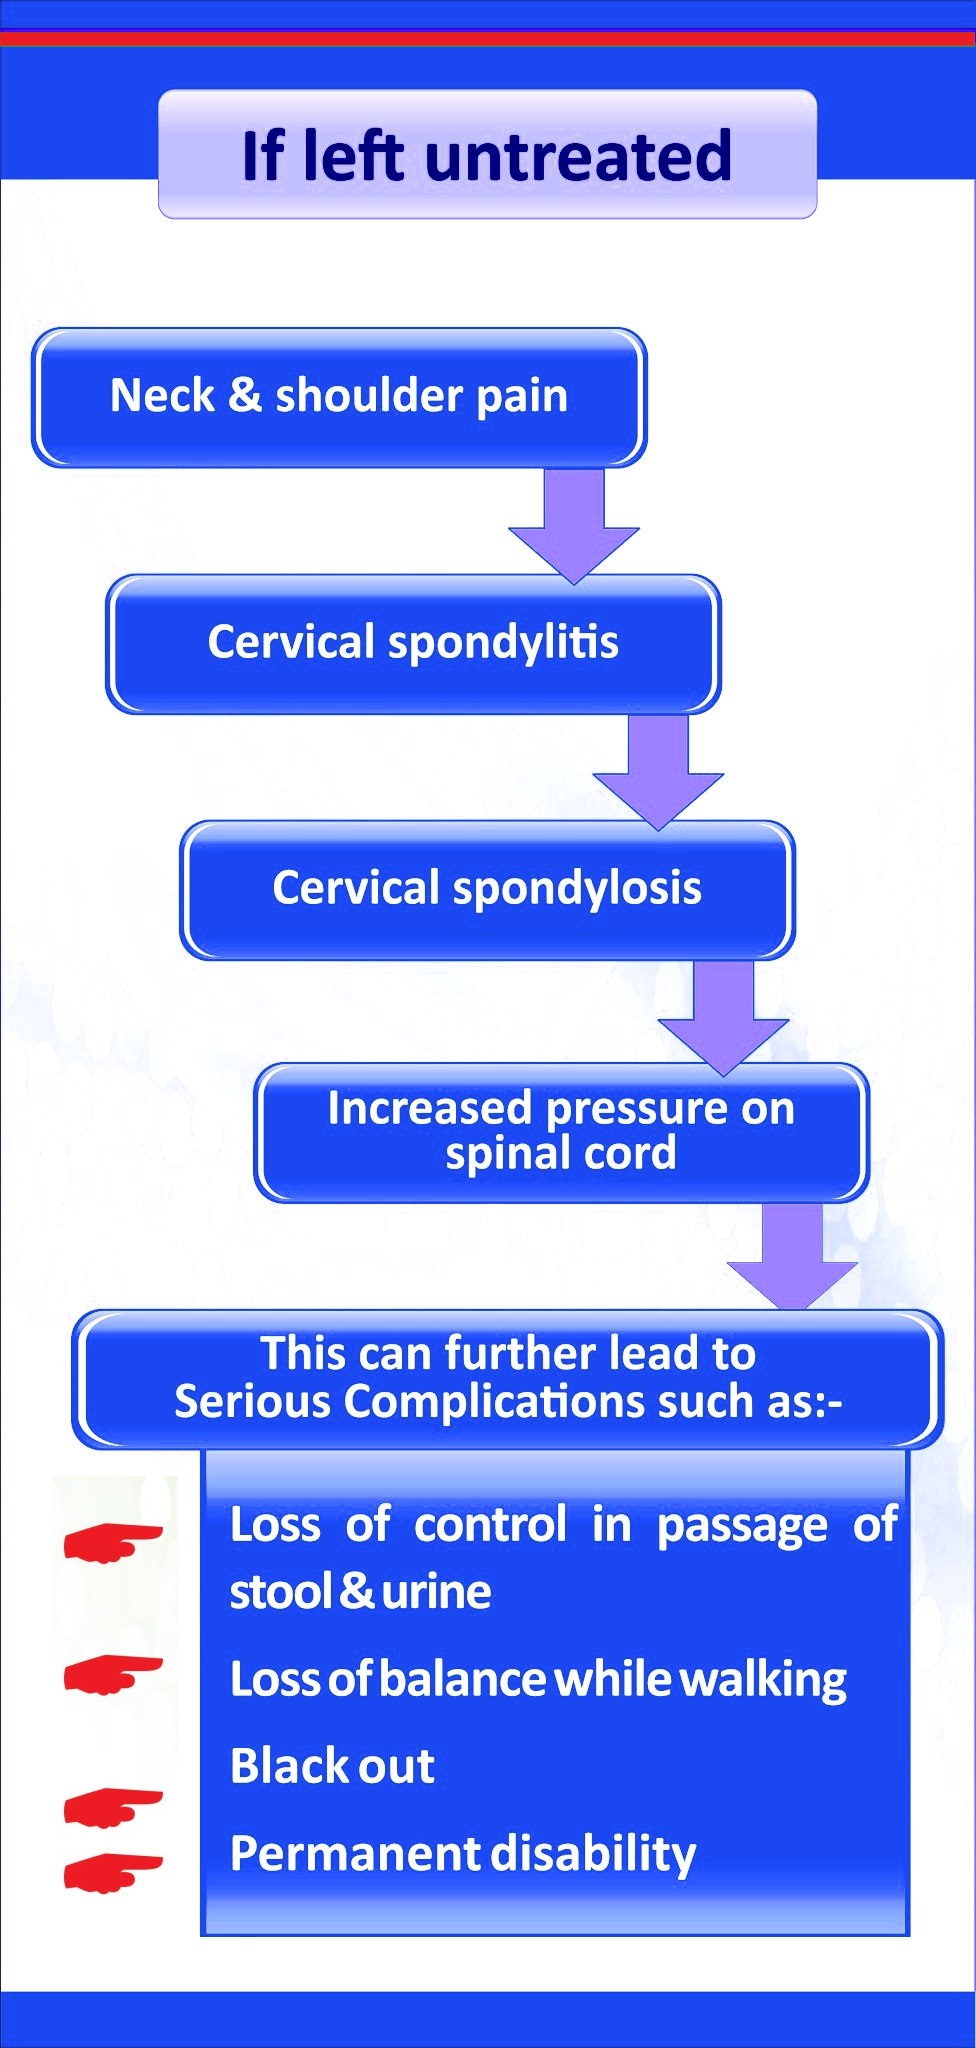 Common symptoms of Cervical spondolysis with which these patients approach the doctor If you left untreated its dangerous || सर्वाइकल स्पोंडोलिसिस के सामान्य लक्षण जिसके साथ ये मरीज़ डॉक्टर के पास जाते हैं अगर छोड़ दिया तो यह खतरनाक है